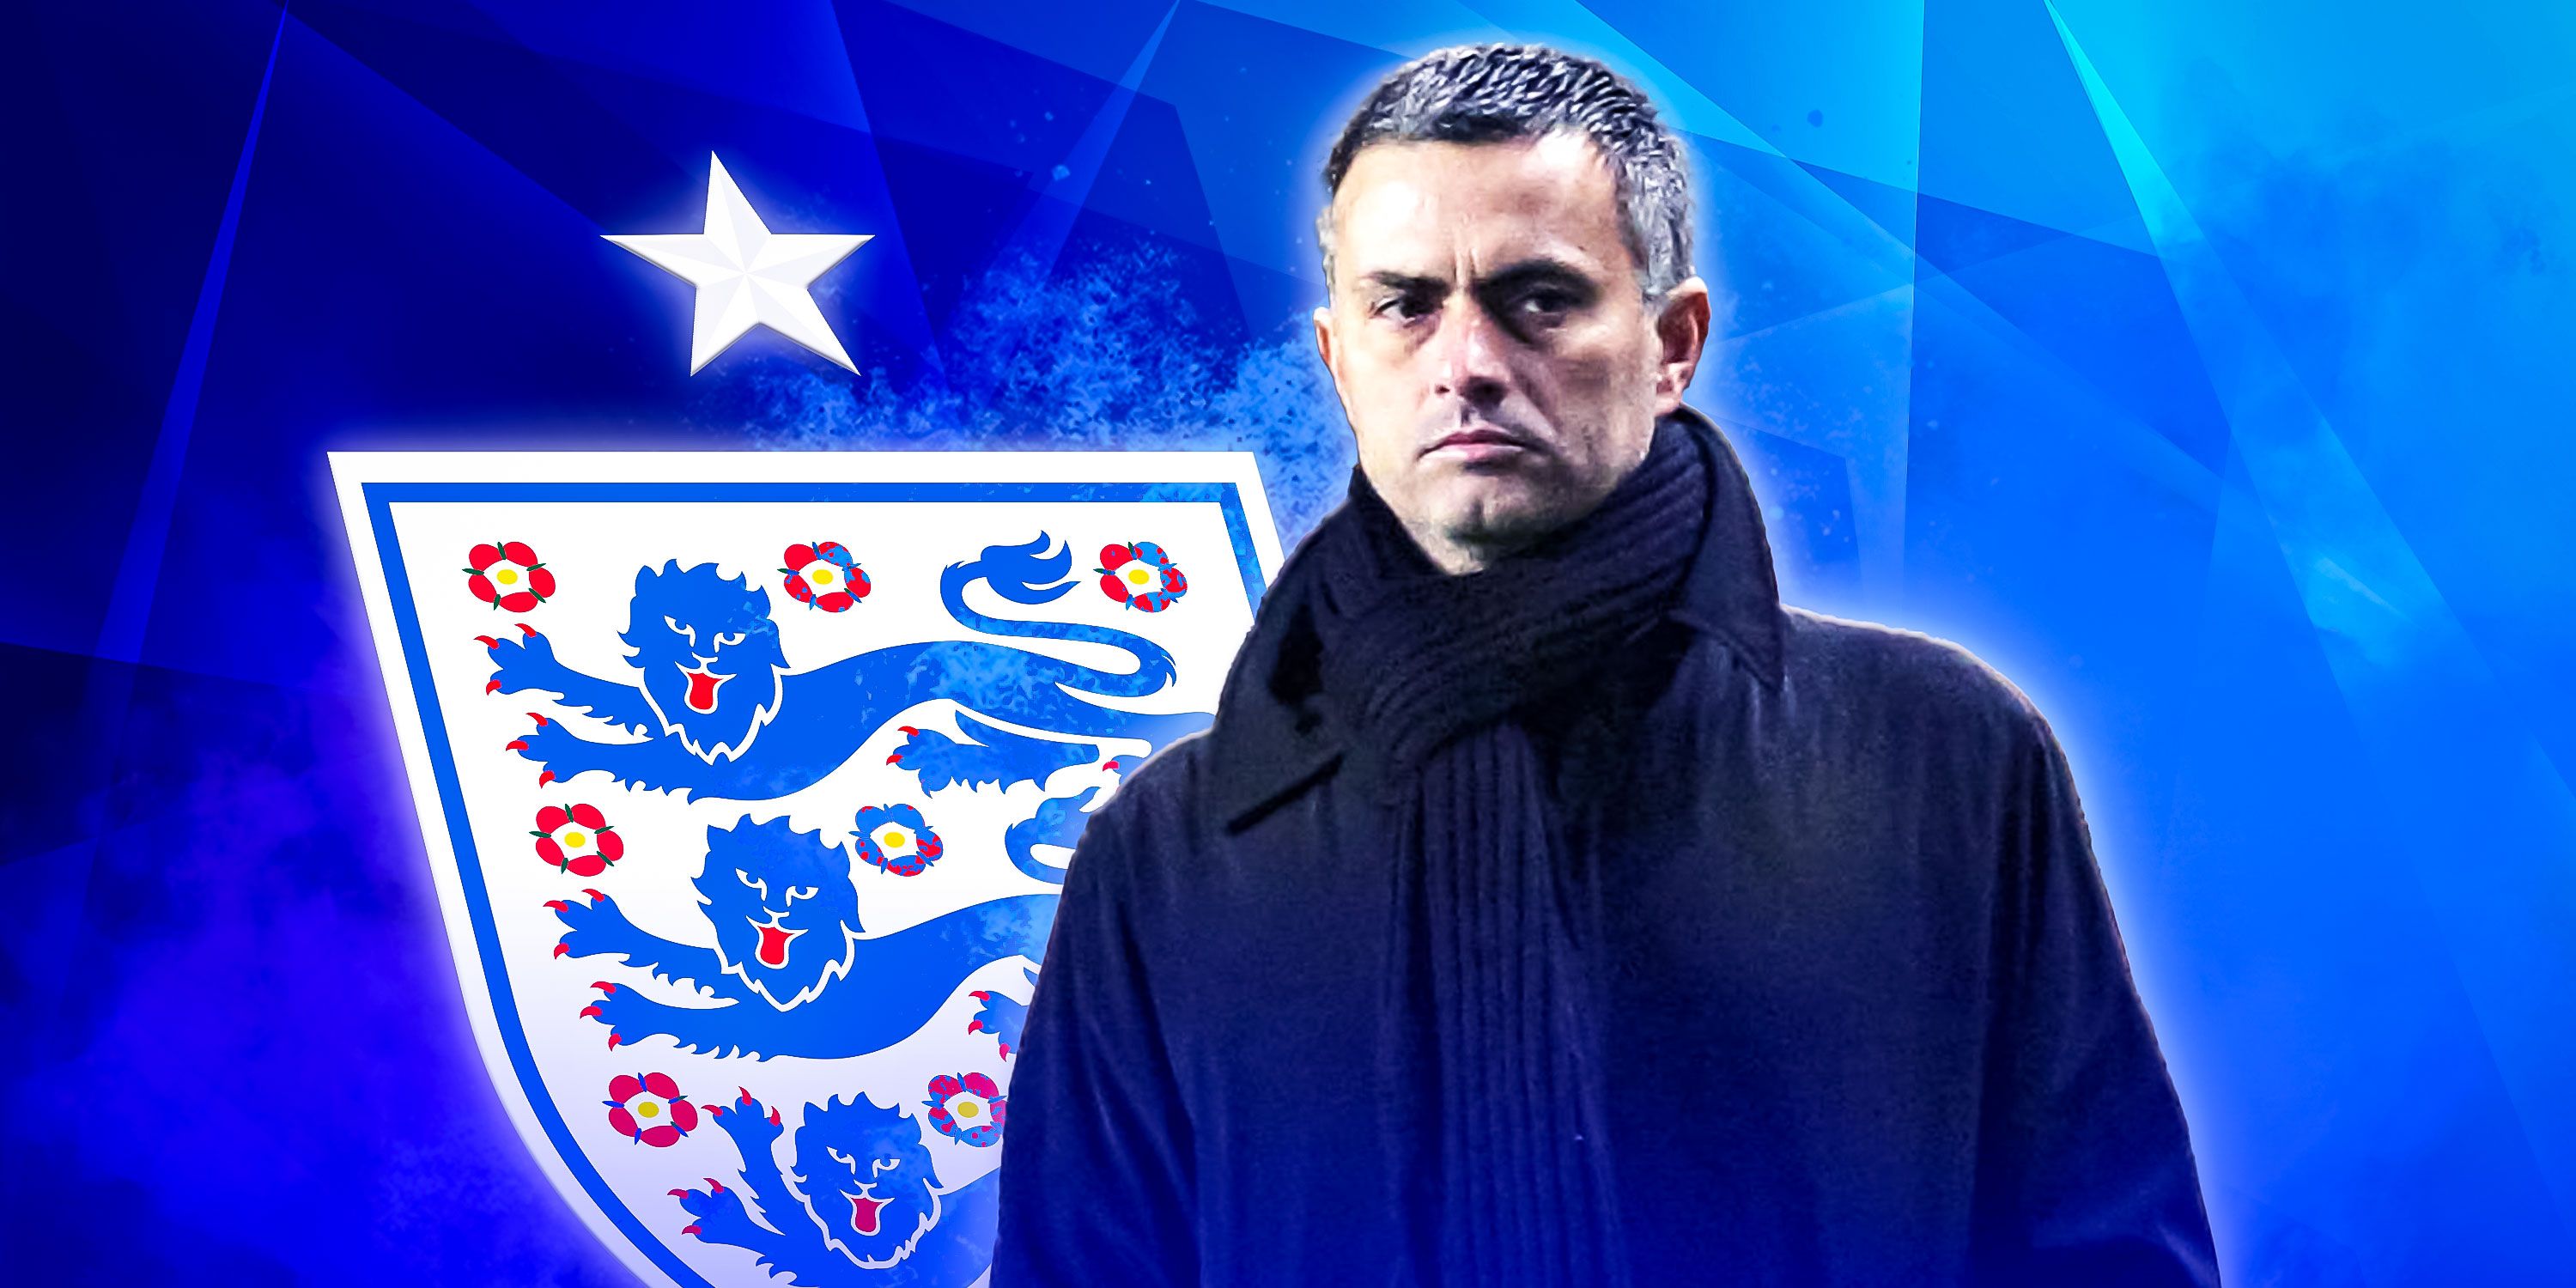 Jose Mourinho and the England badge.